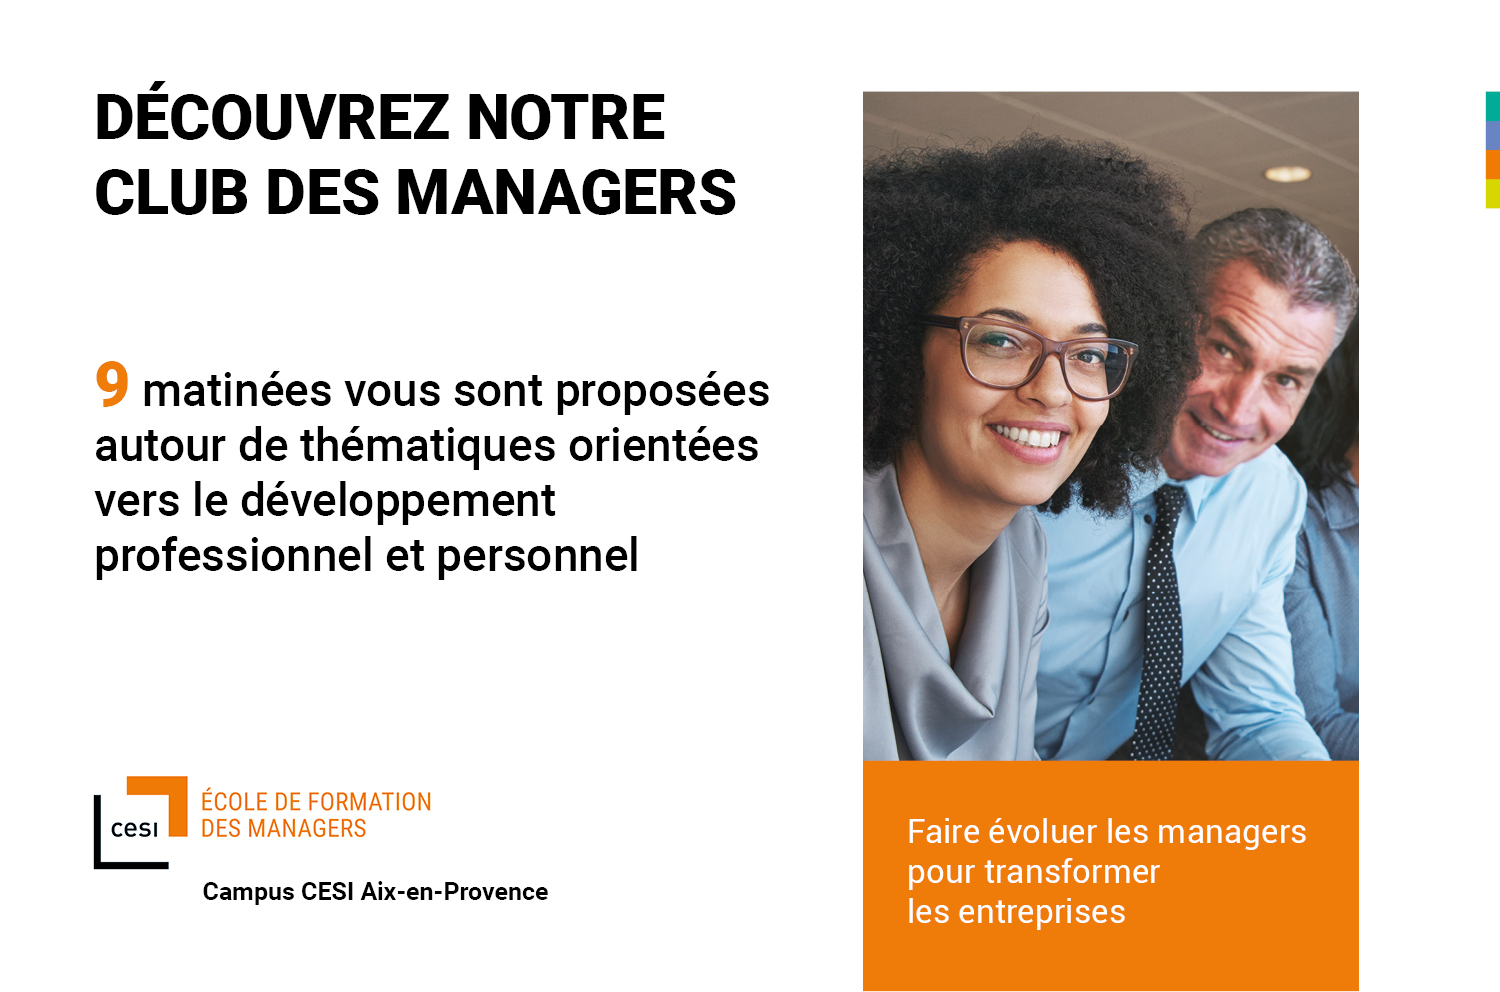 Club des managers CESI Aix-en-Provence: Managers, utilisez l’intelligence collective au quotidien !